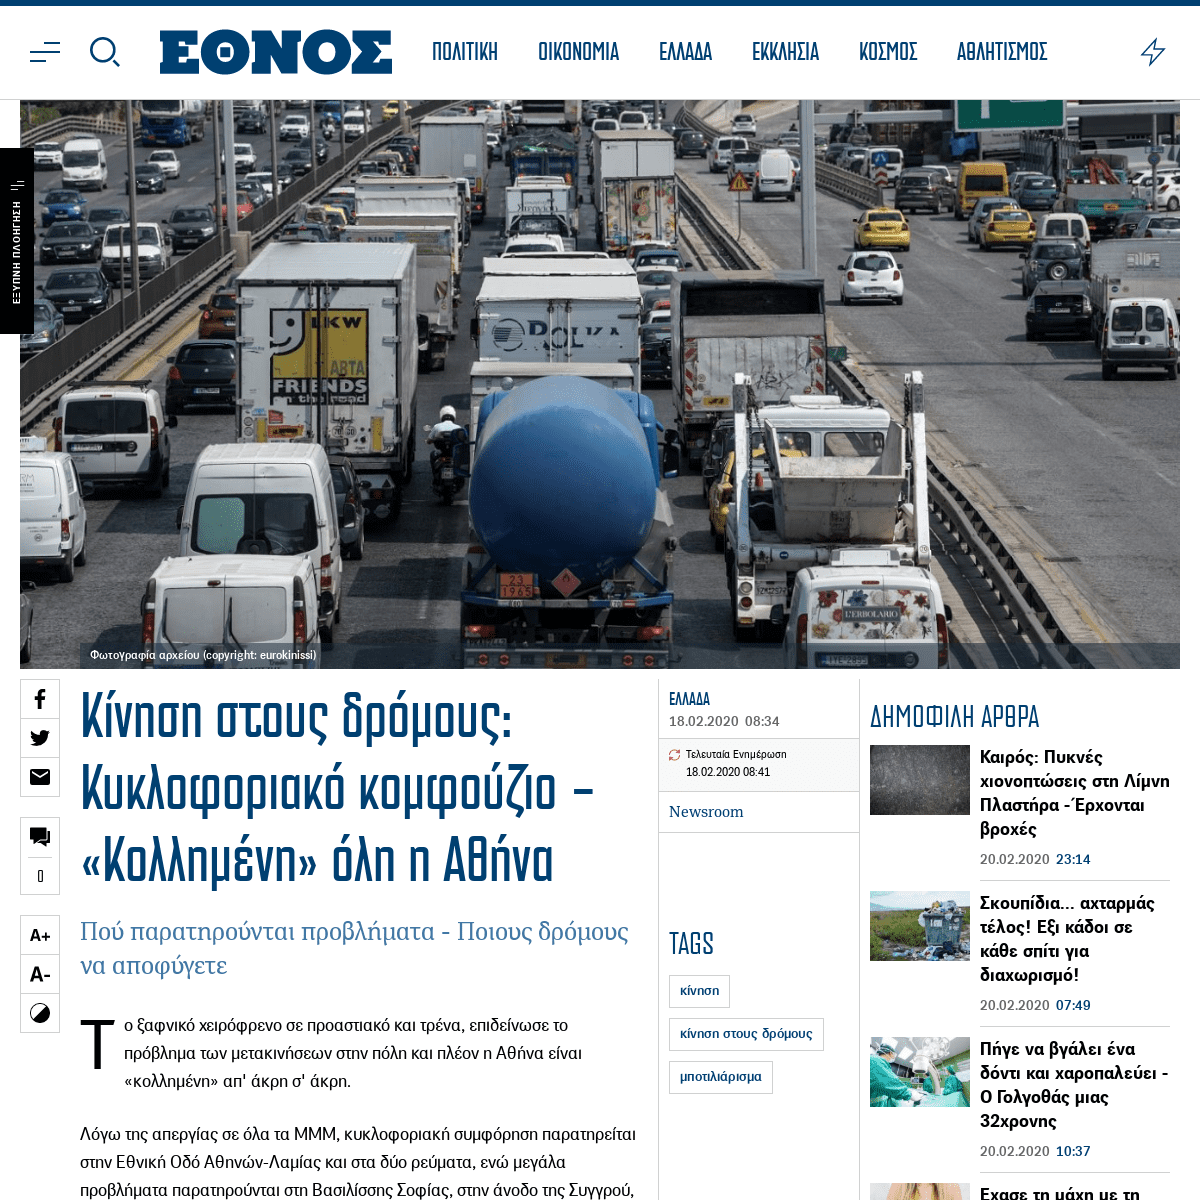 A complete backup of www.ethnos.gr/ellada/89128_kinisi-stoys-dromoys-kykloforiako-komfoyzio-kollimeni-oli-i-athina